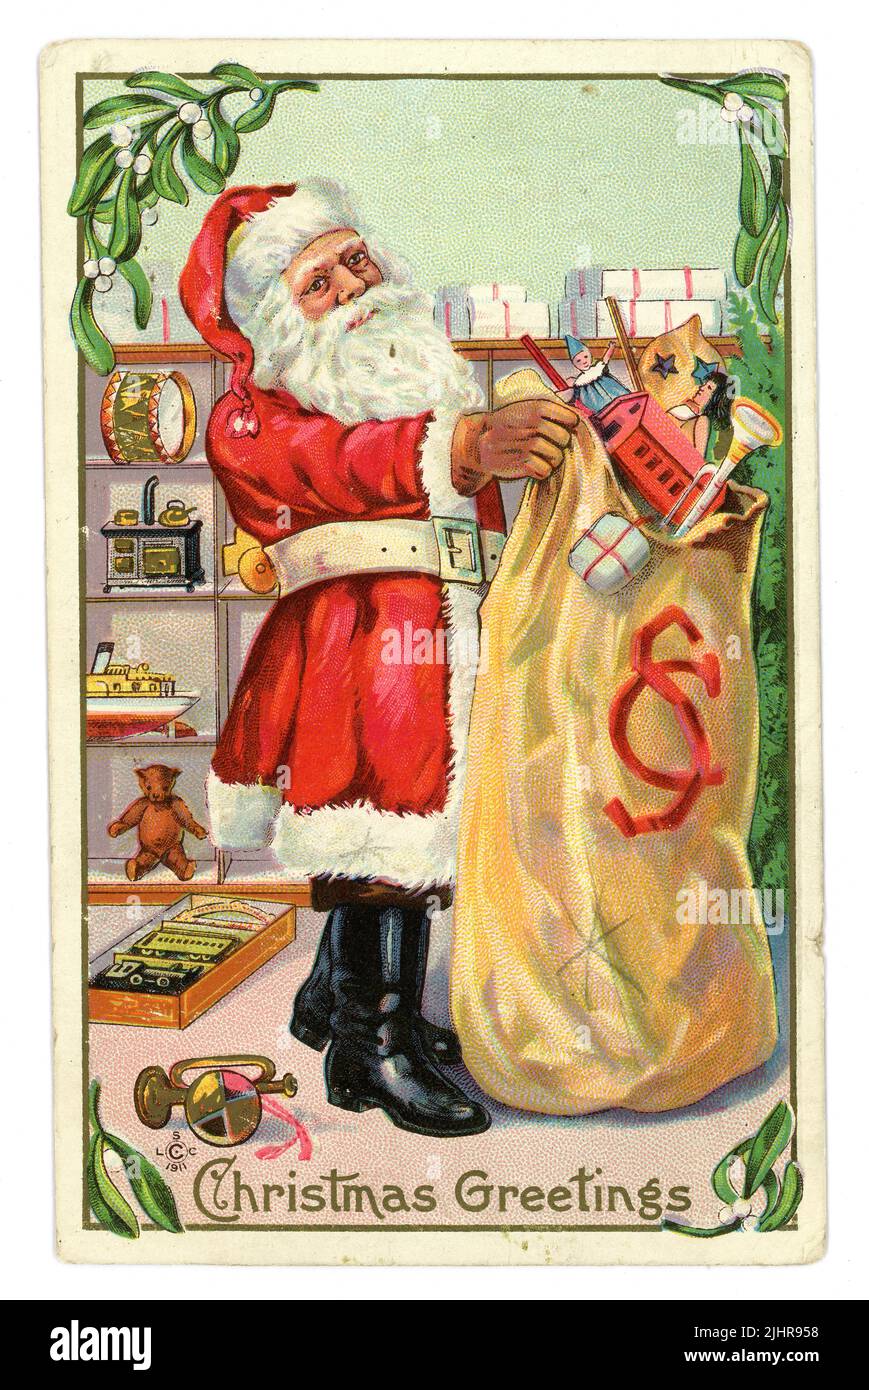 Cartolina di Natale originale dell'epoca edoardiana di Santa con sacco di giocattoli, caricamento di regali dai suoi scaffali del negozio, circa 1907, Regno Unito Foto Stock